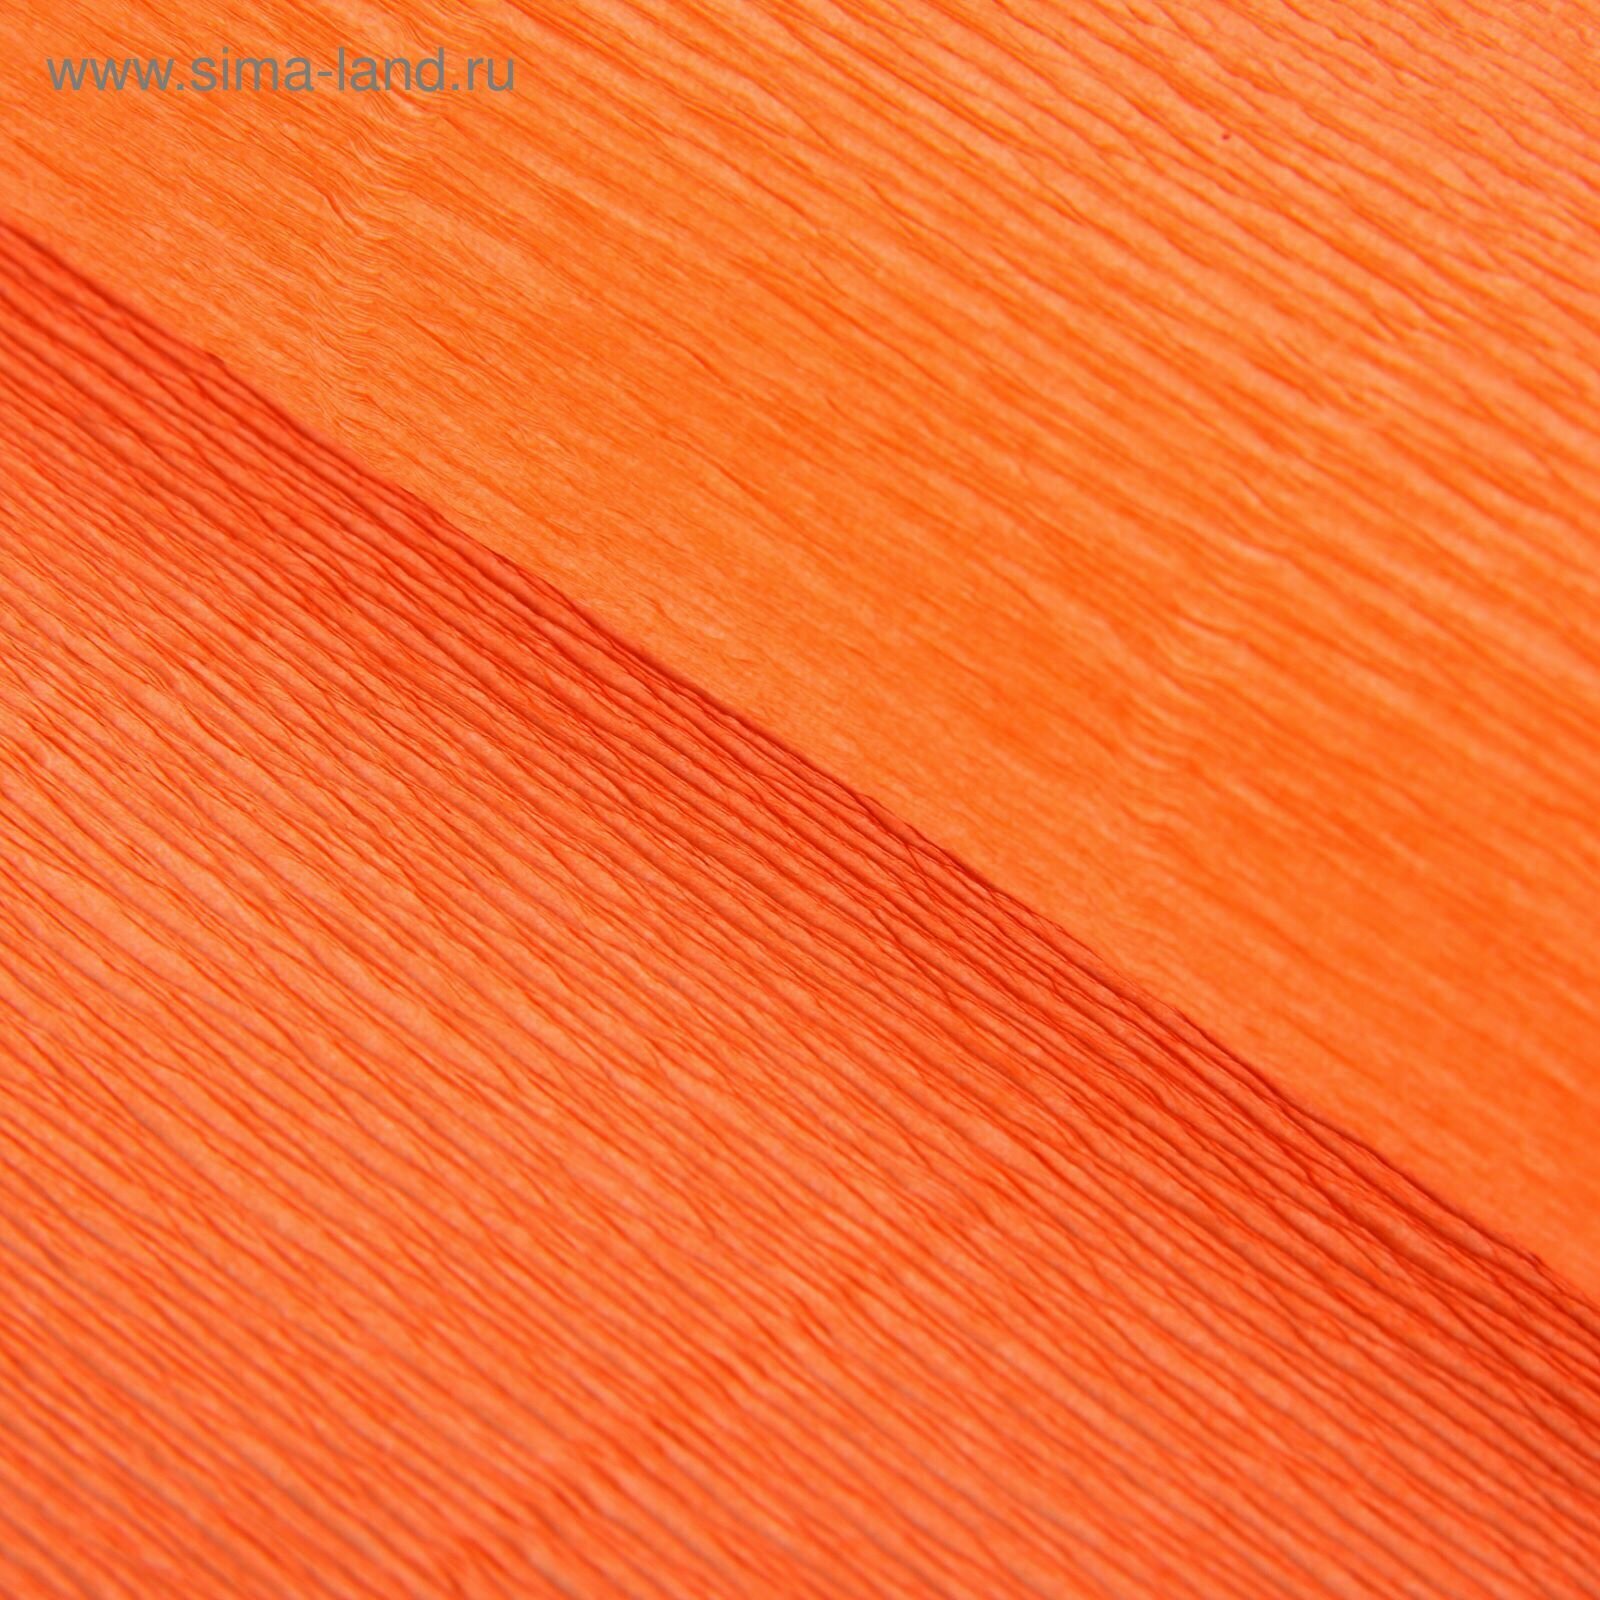 Бумага для декора и флористики, гофрированная, "Неоновая", оранжевая, двусторонняя, однотонная, рулон 1шт, 0,5 х 2,5 м